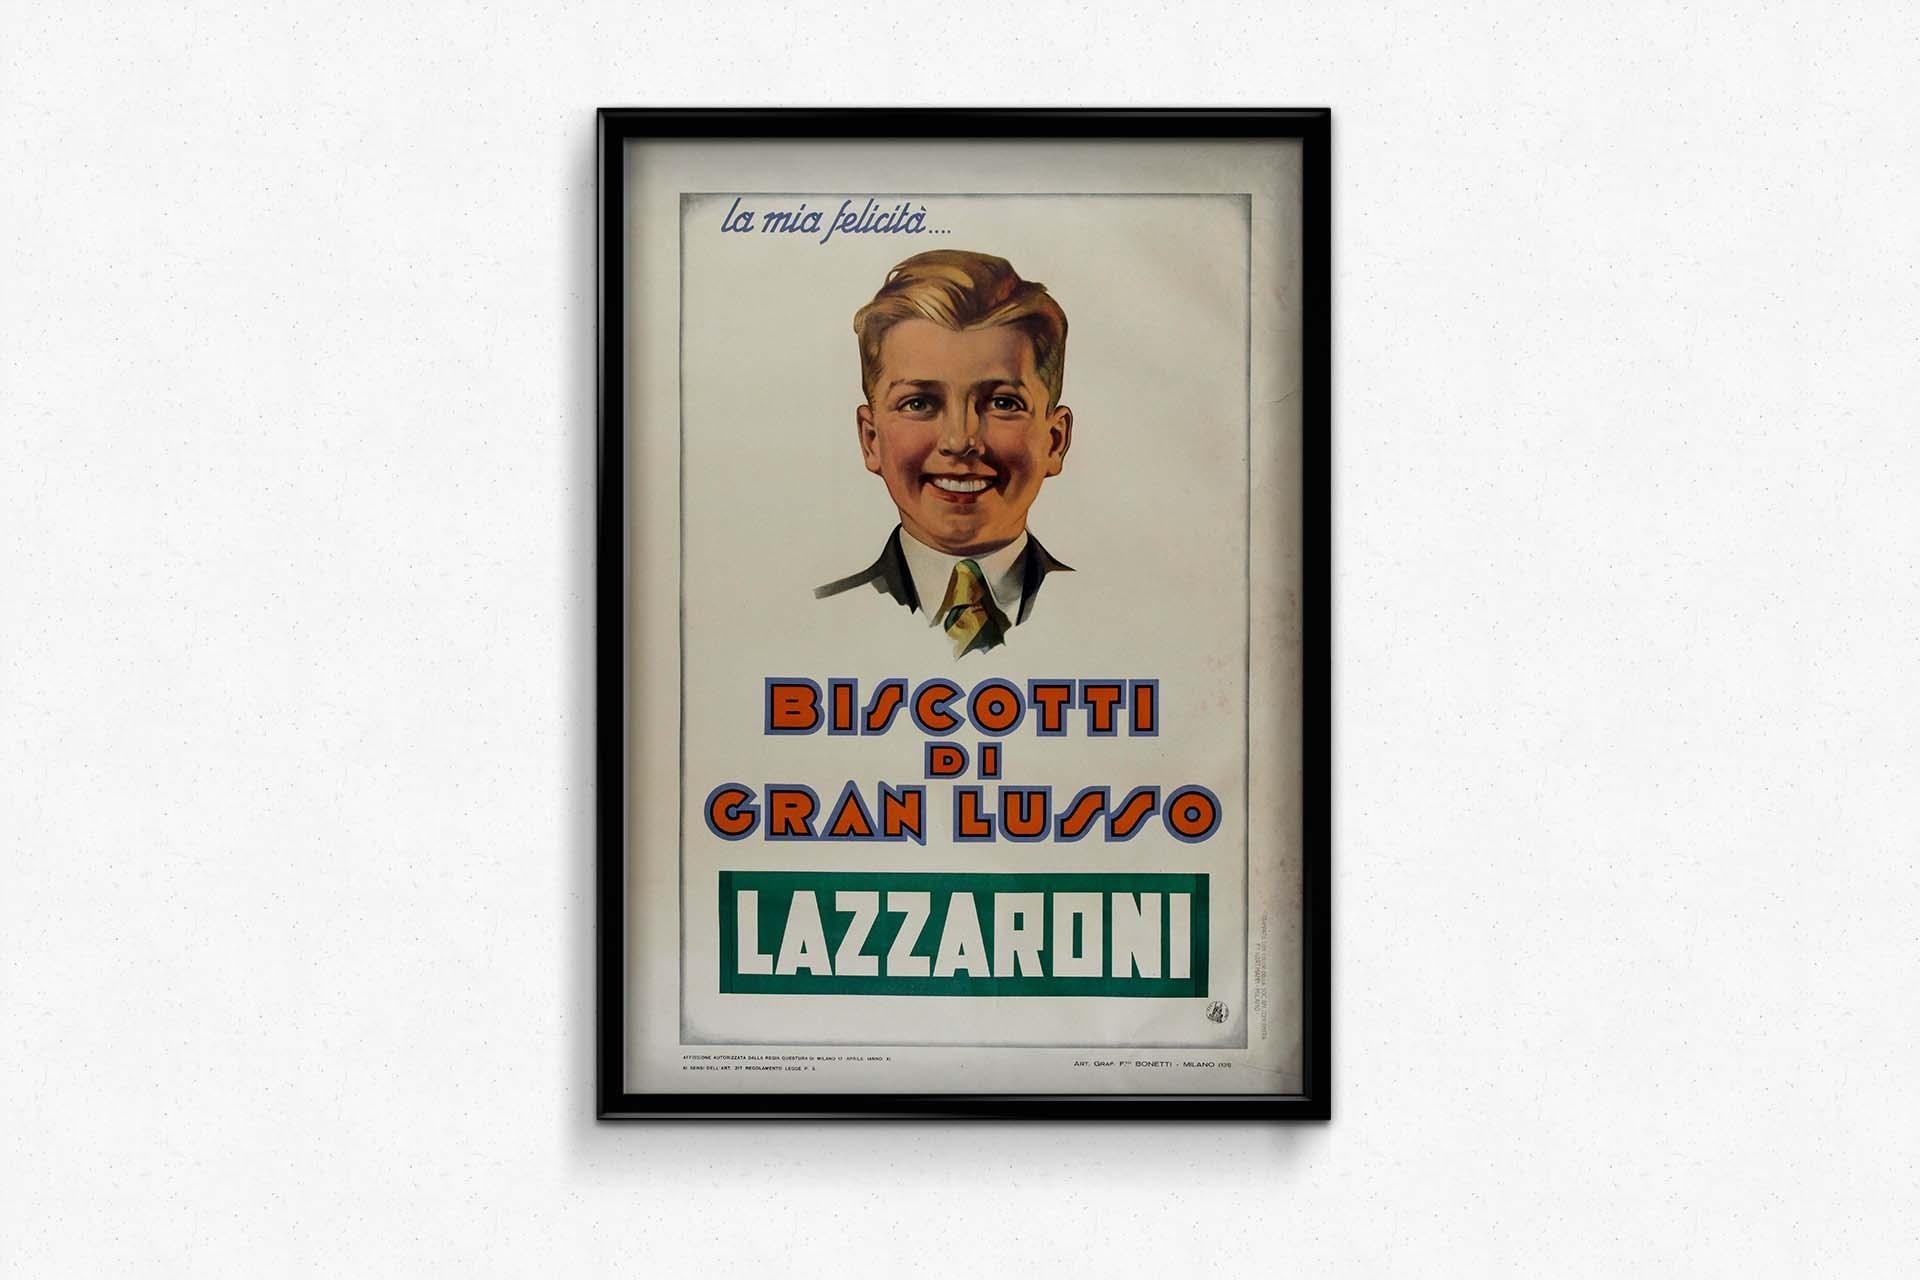 1932 original advertising poster for Biscotti di gran Lusso - Lazzaroni - Art Deco Print by Unknown